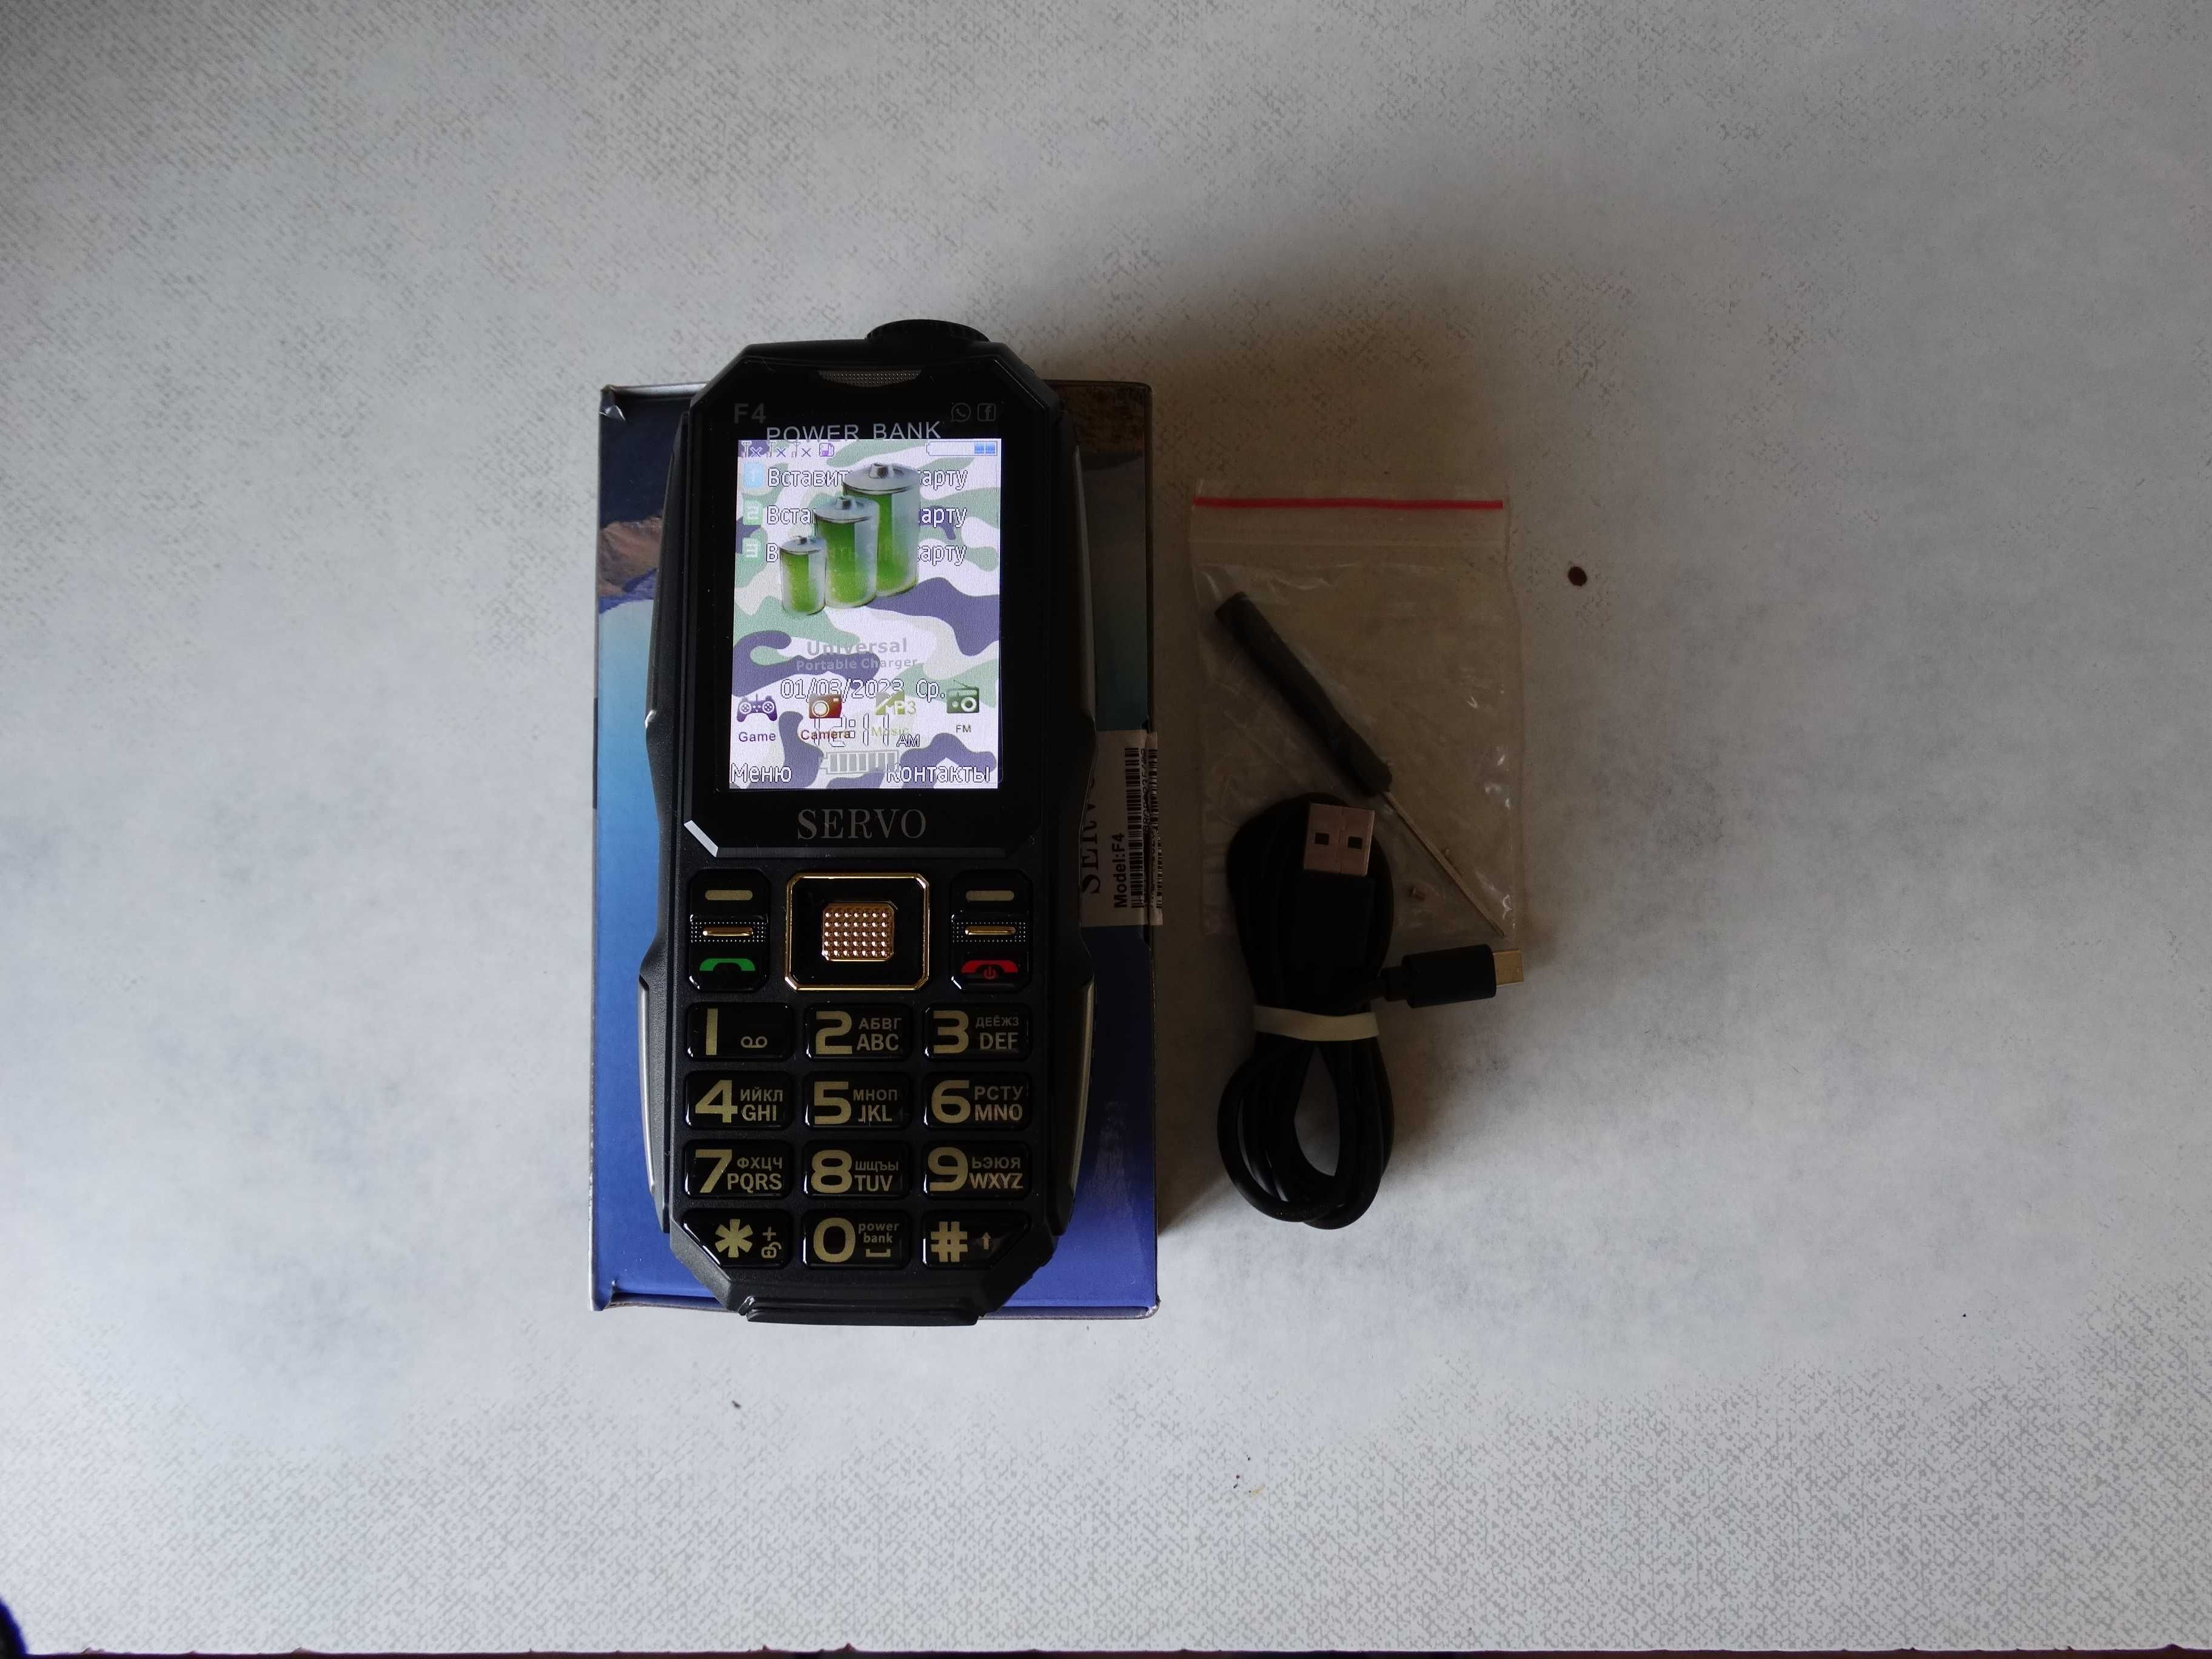 кнопочный телефон-повербанк SERVO F4 3 SIM